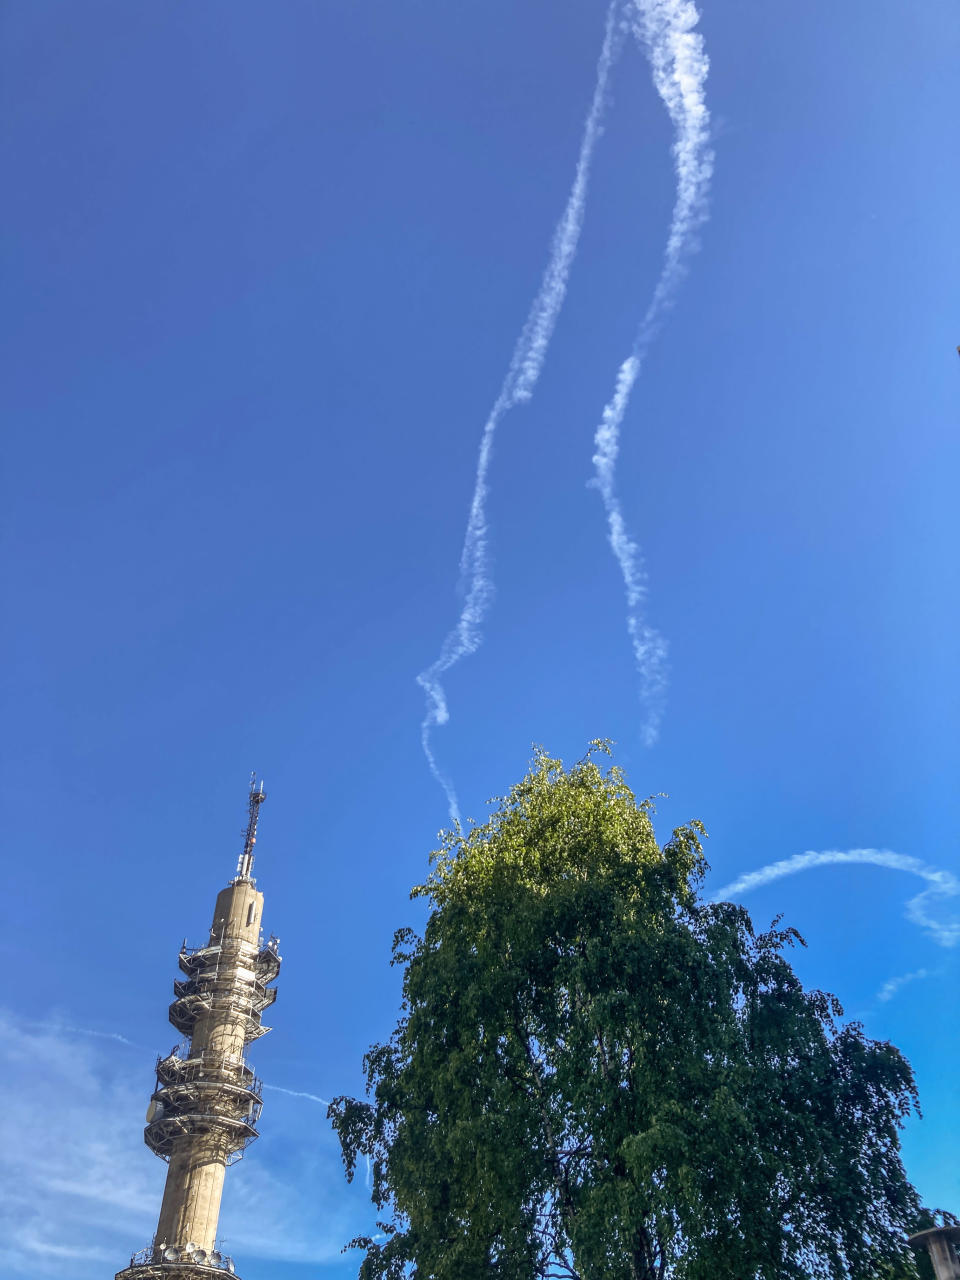 Hawk-harjoituslennot kääntävät katseet taivaalle Helsingin yllä